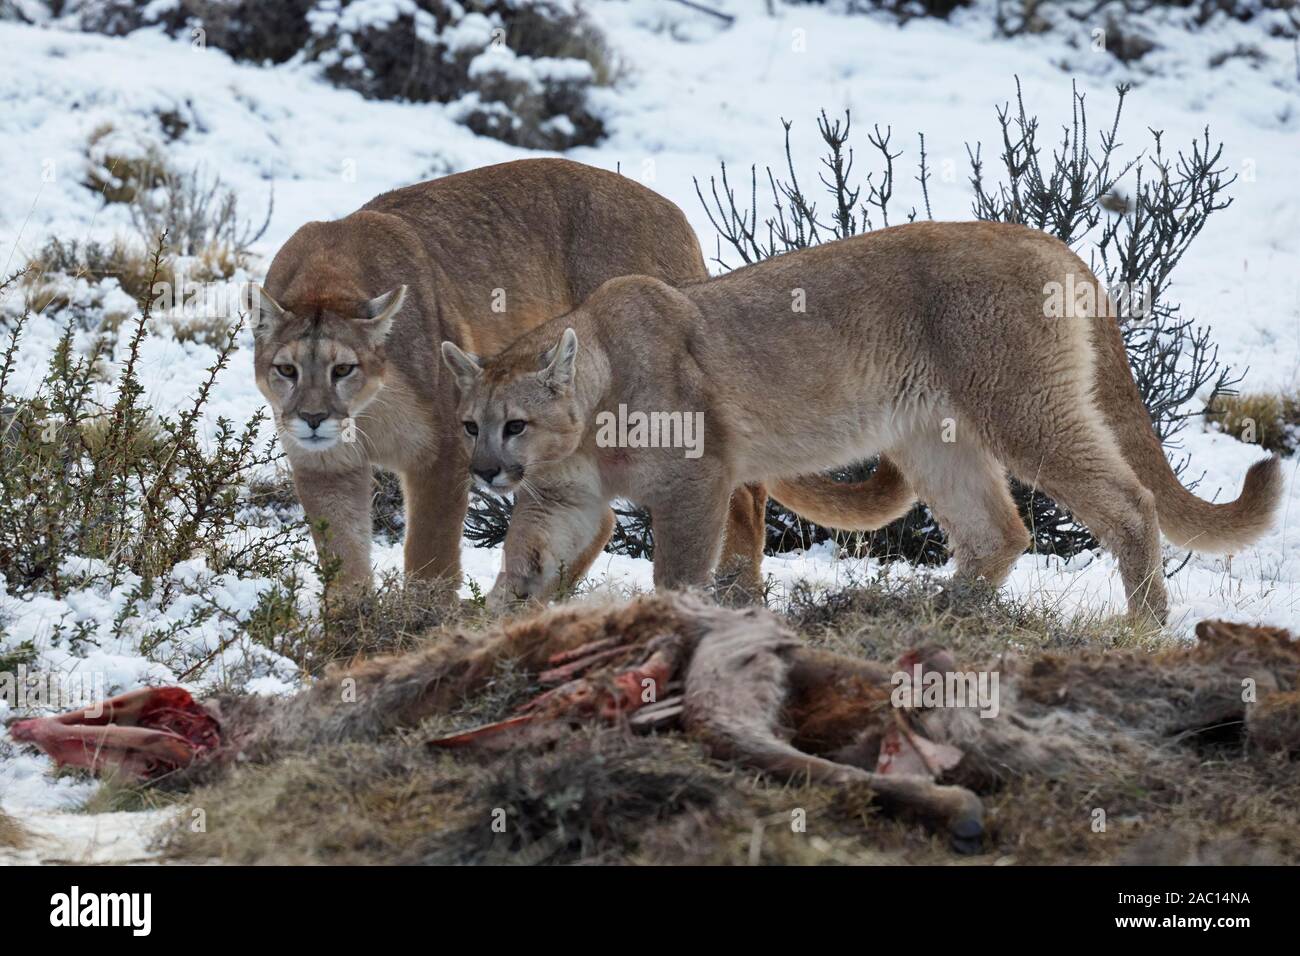 Le Puma concolor couguar (dans la neige), barrage et un ans cub sur la carcasse d'un chassée de Lama guanicoe) Guanacos, Parc National Torres del Paine Banque D'Images